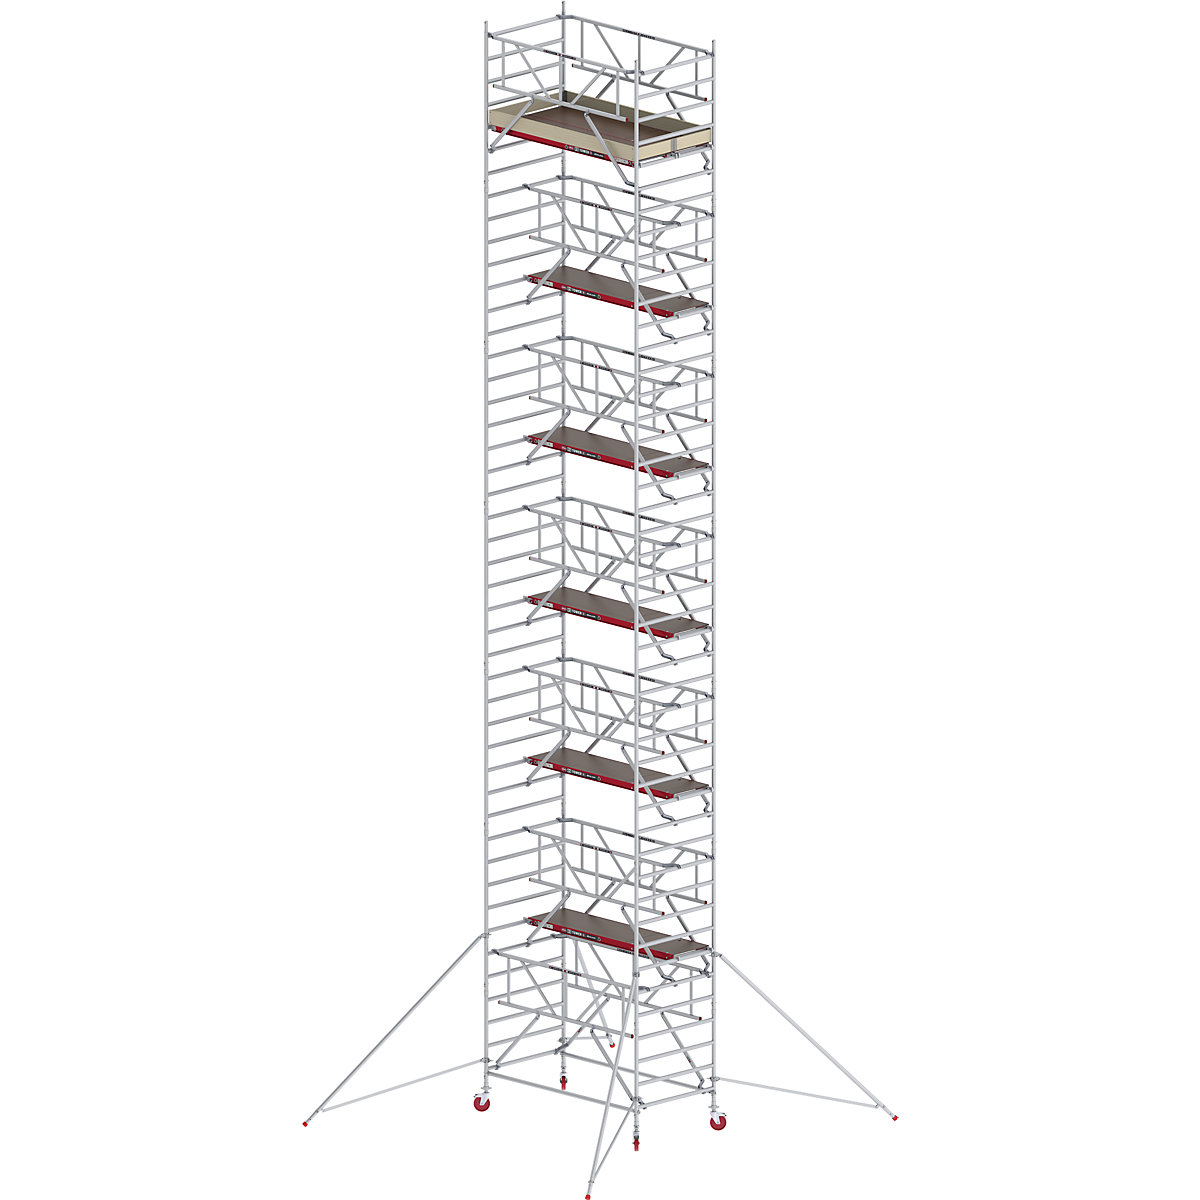 Trabattello mobile RS TOWER 42 largo con Safe-Quick® – Altrex, piattaforma in legno, lunghezza 1,85 m, altezza di lavoro 14,2 m-6